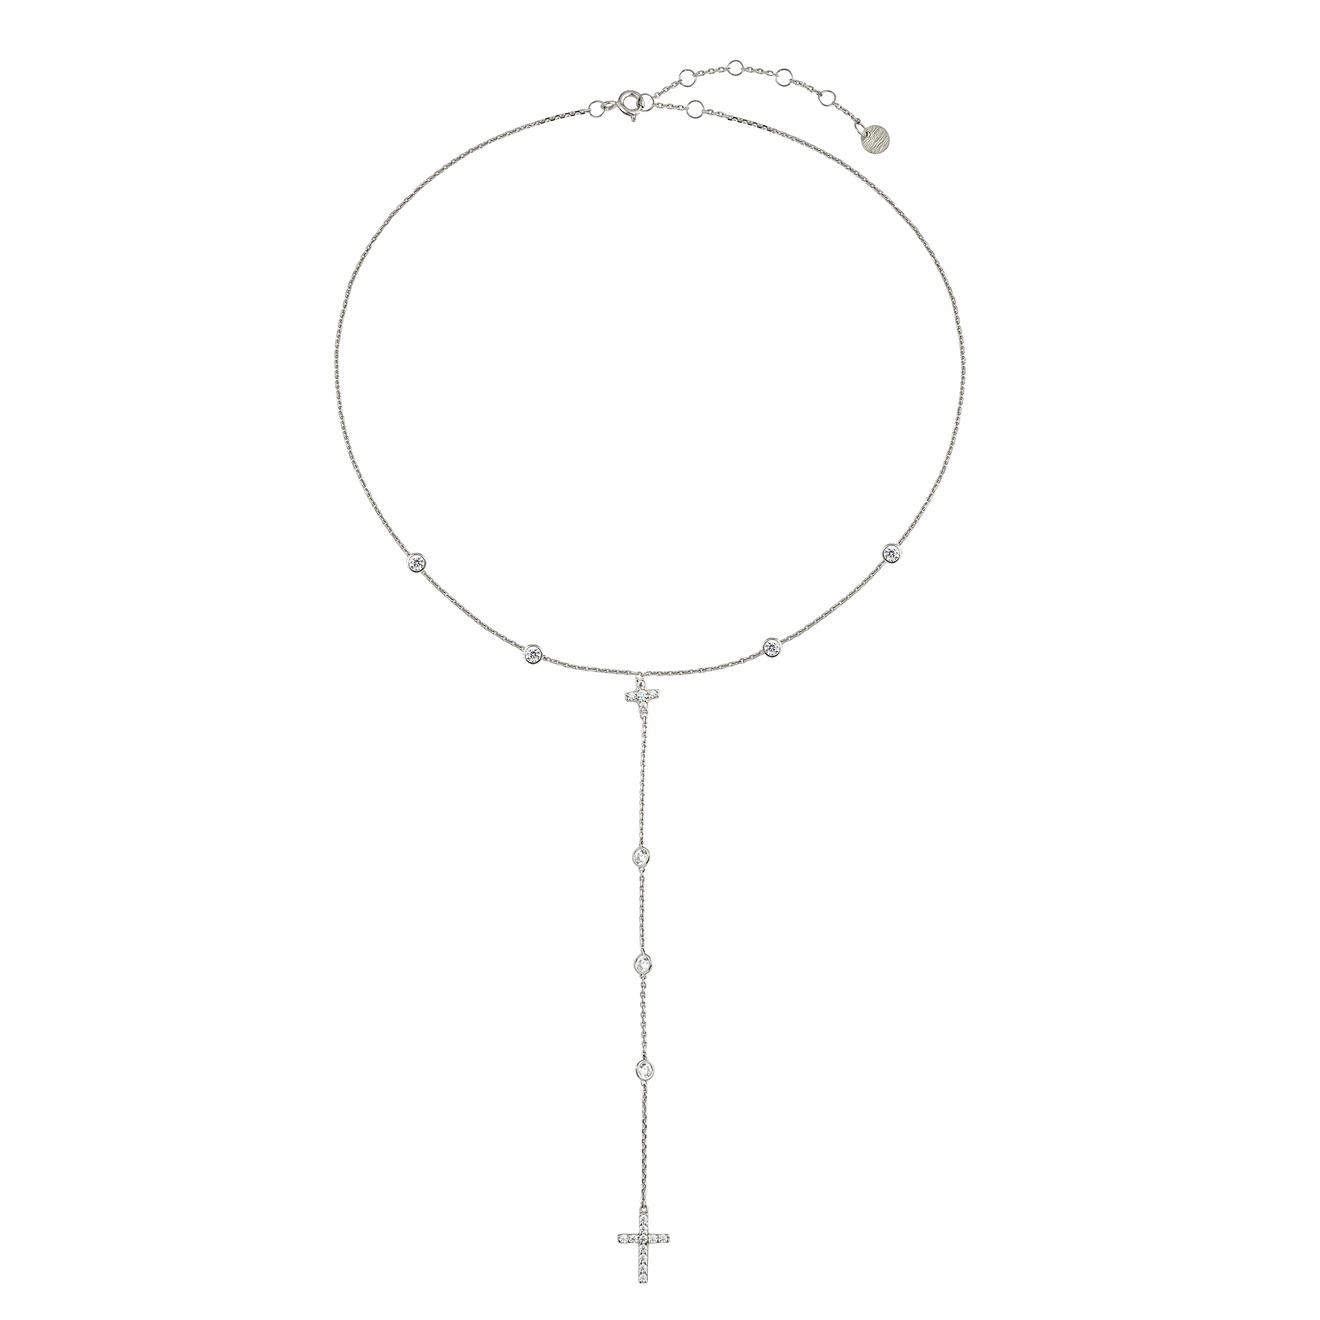 holy silver позолоченное колье с крестом и двумя кругами 35.02 Колье-галстук с кругами, маленьким и большим крестом из белого золота